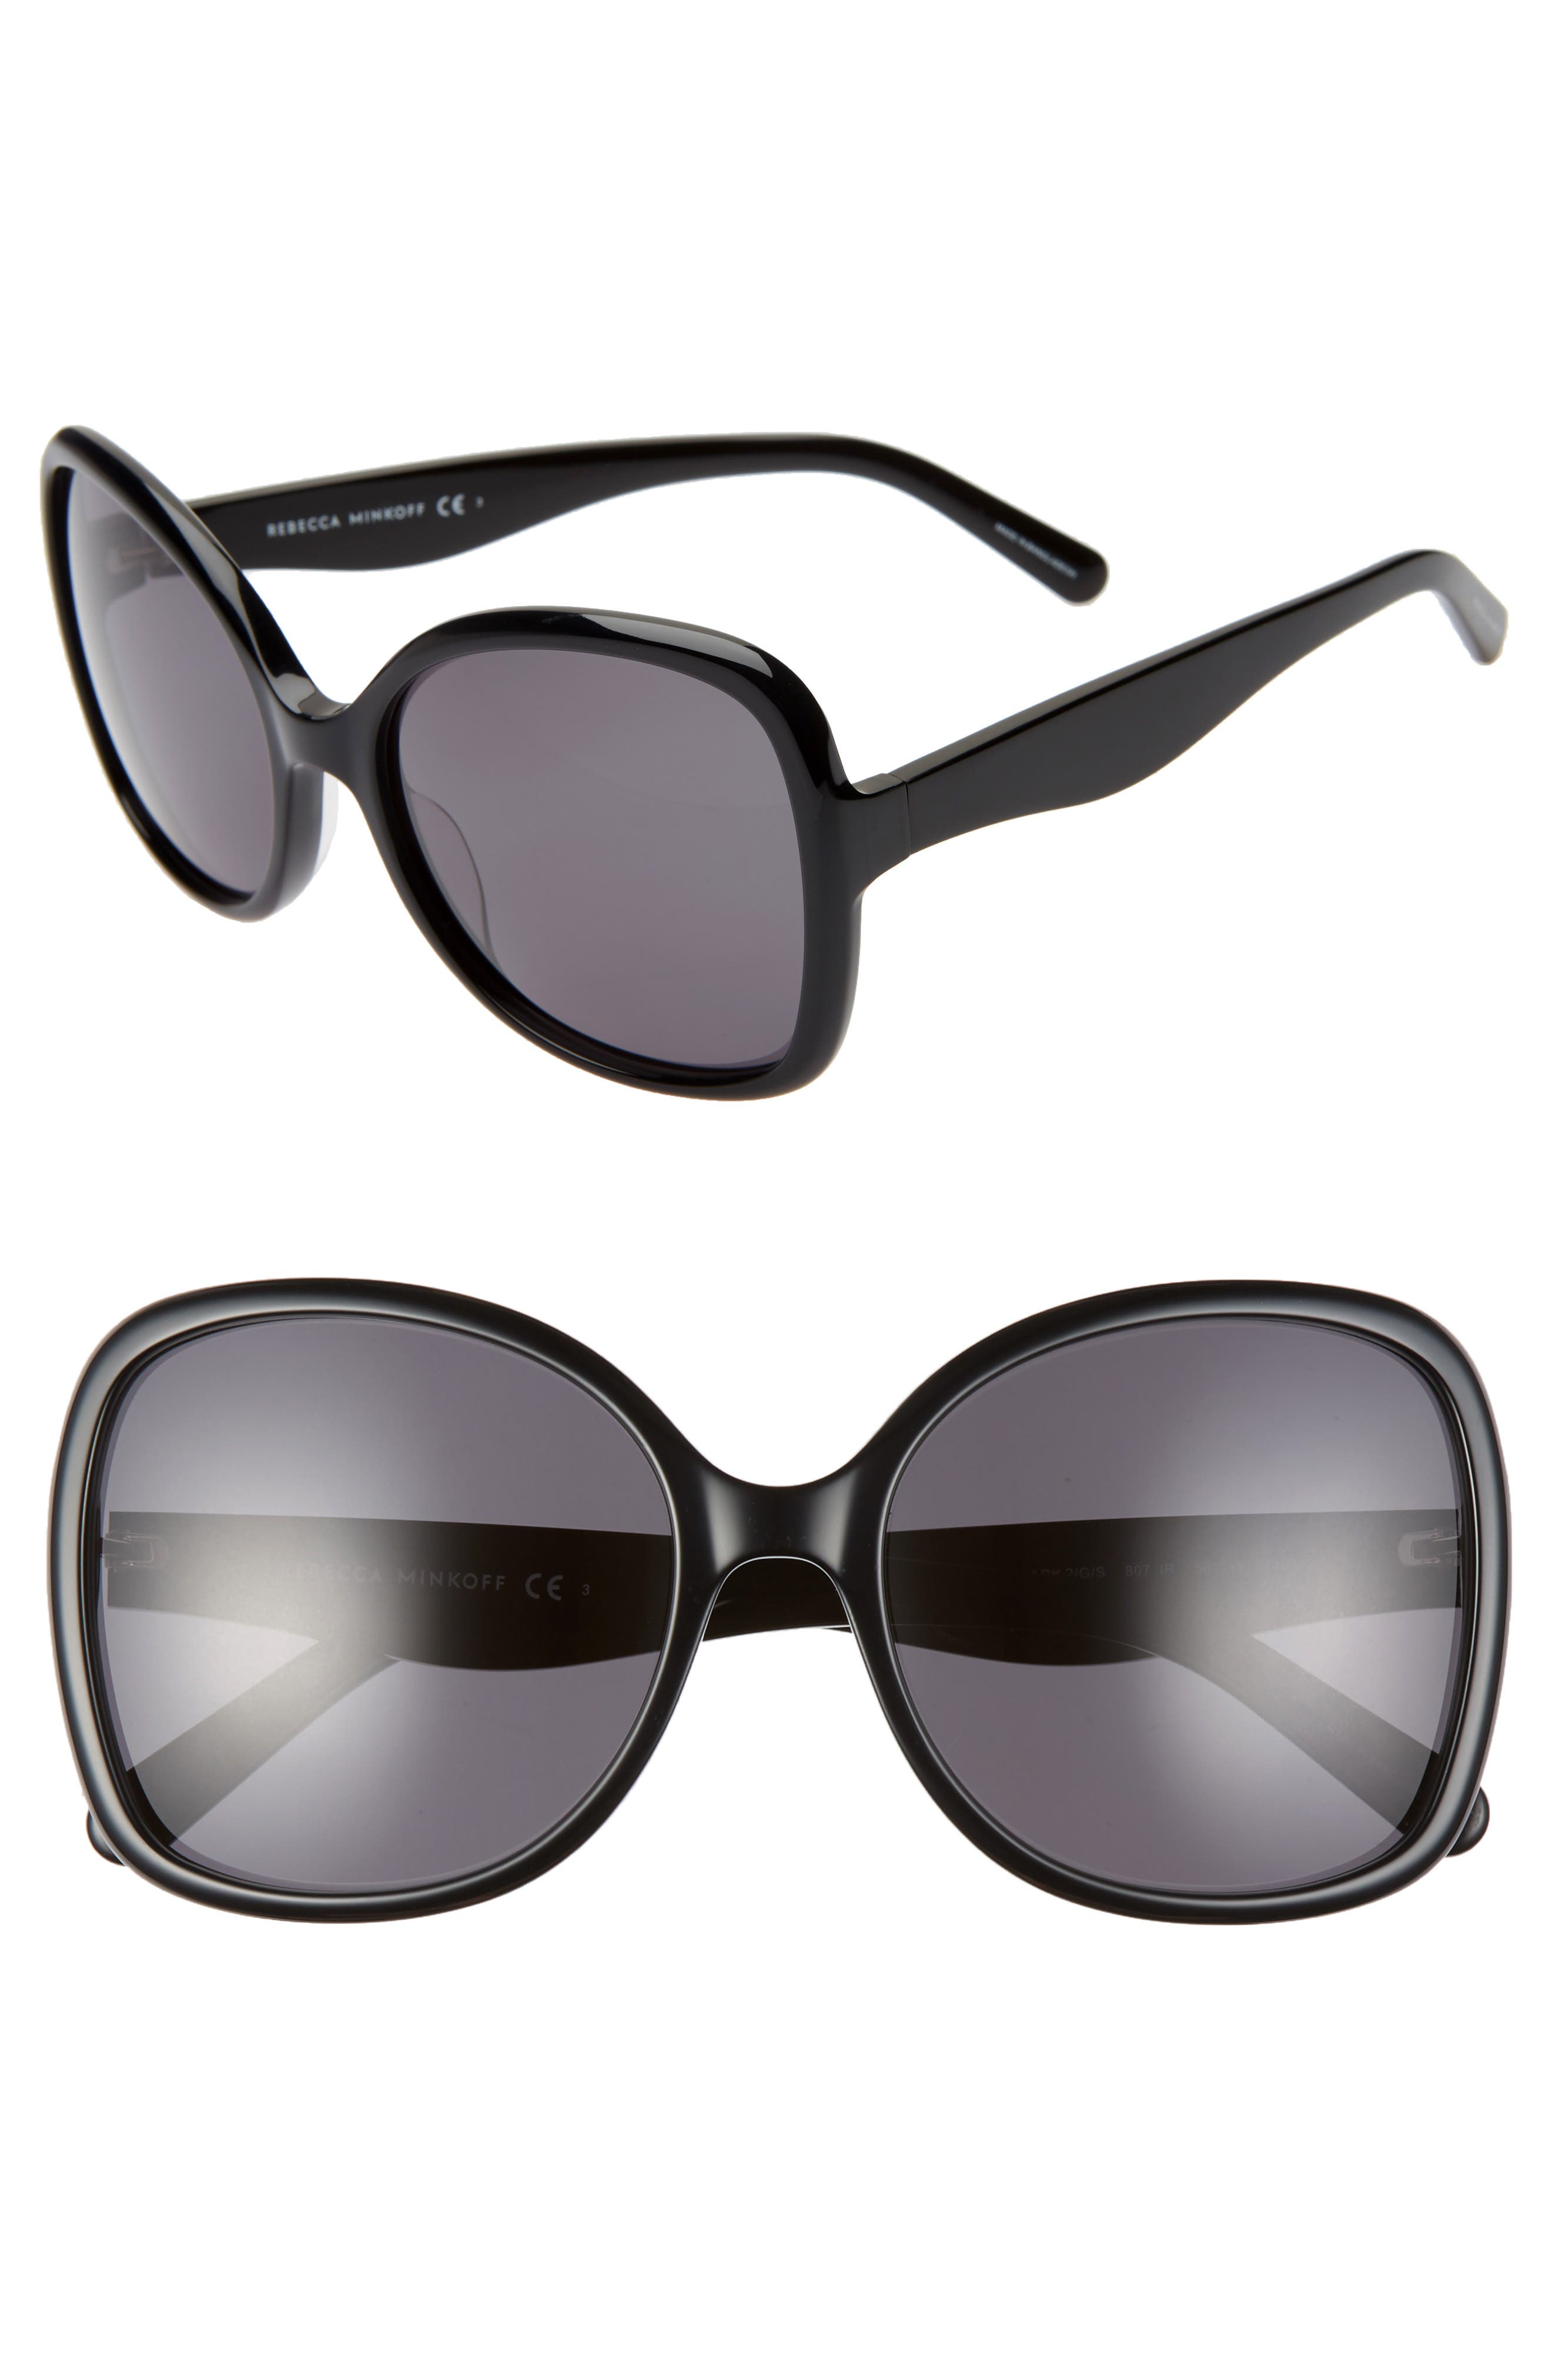 Womens Accessories Sunglasses Rebecca Minkoff Indio 52mm Round Sunglasses in Black 